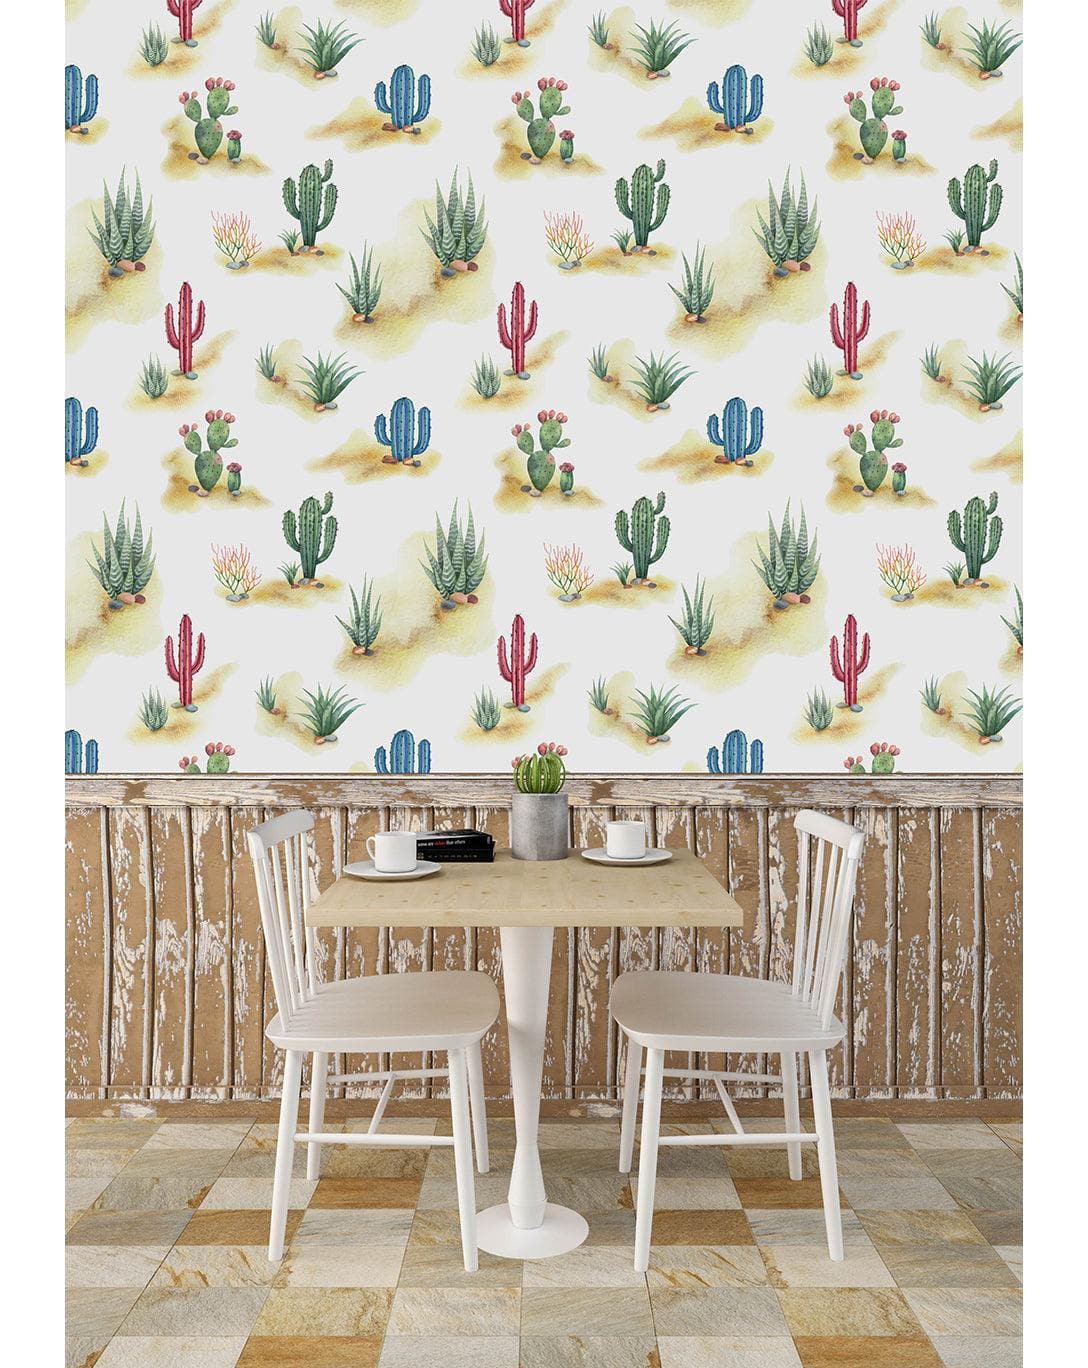 Desert Cactus Landscape Removable Wallpaper Desert Cactus Landscape Removable Wallpaper 